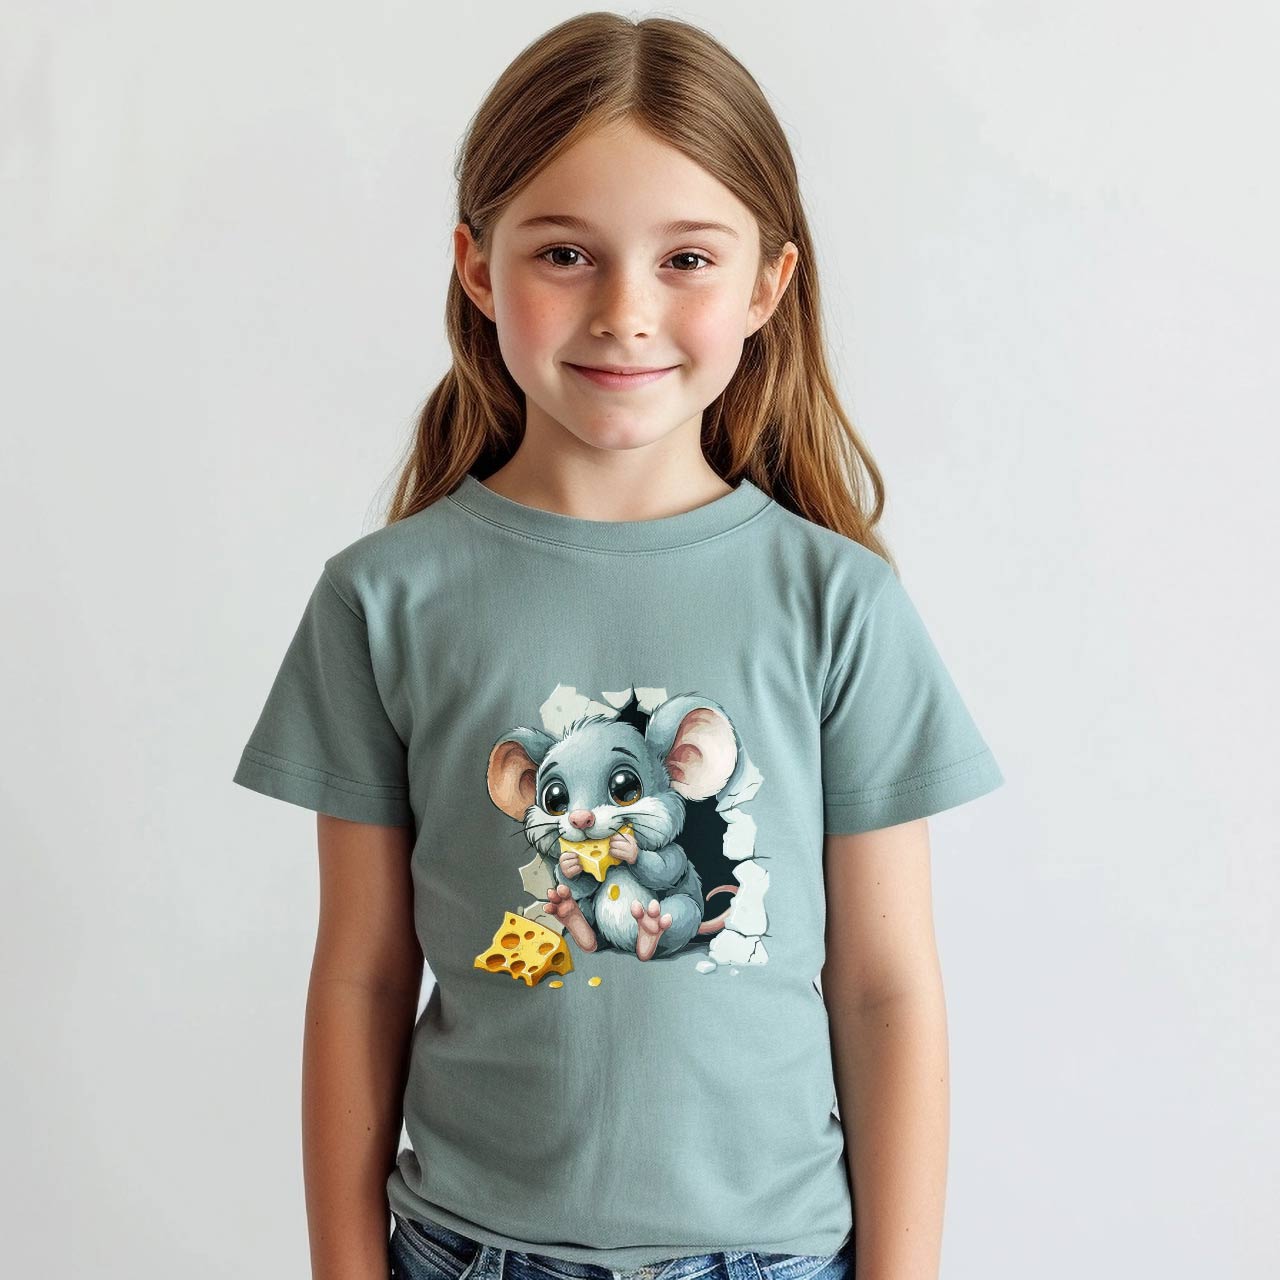 Detská nažehovačka na tričko, dievčatko na bielom pozadí, model